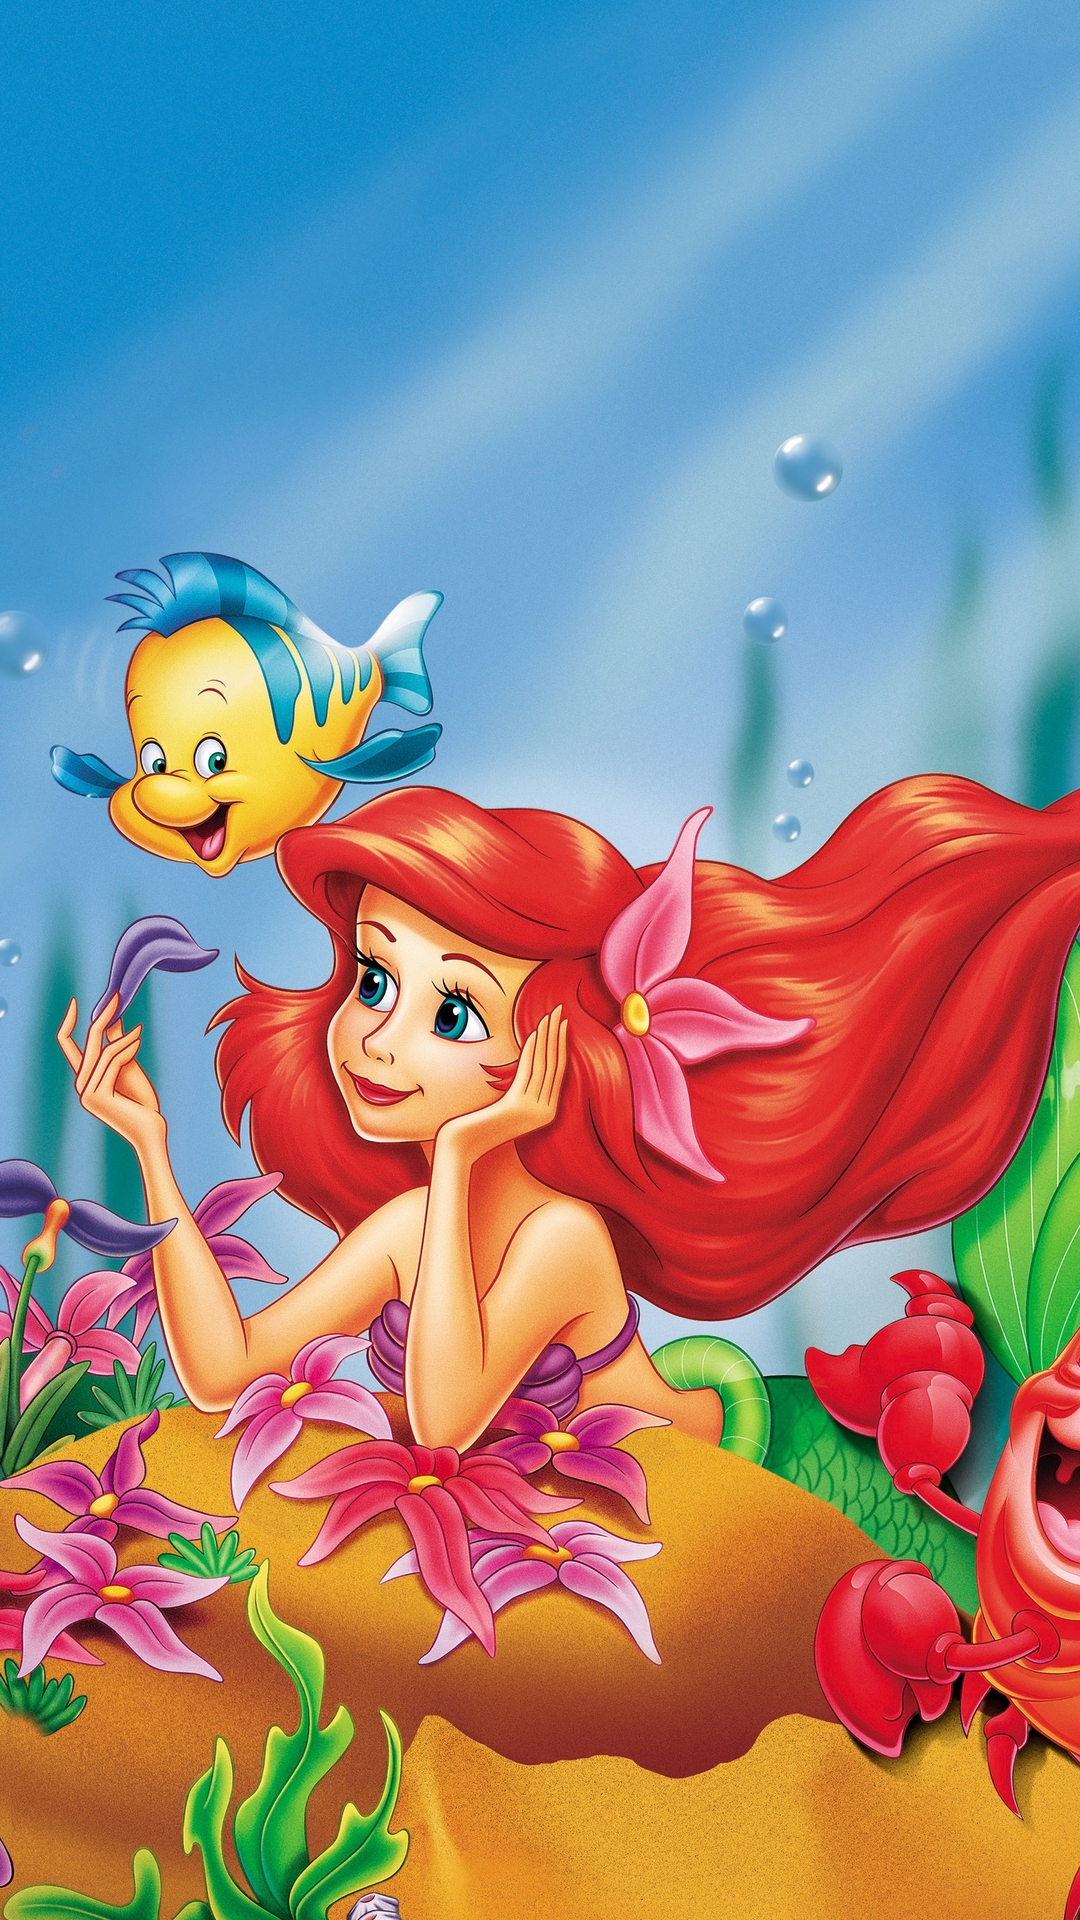 迪士尼动漫“小美人鱼”插画手机壁纸第2张壁纸